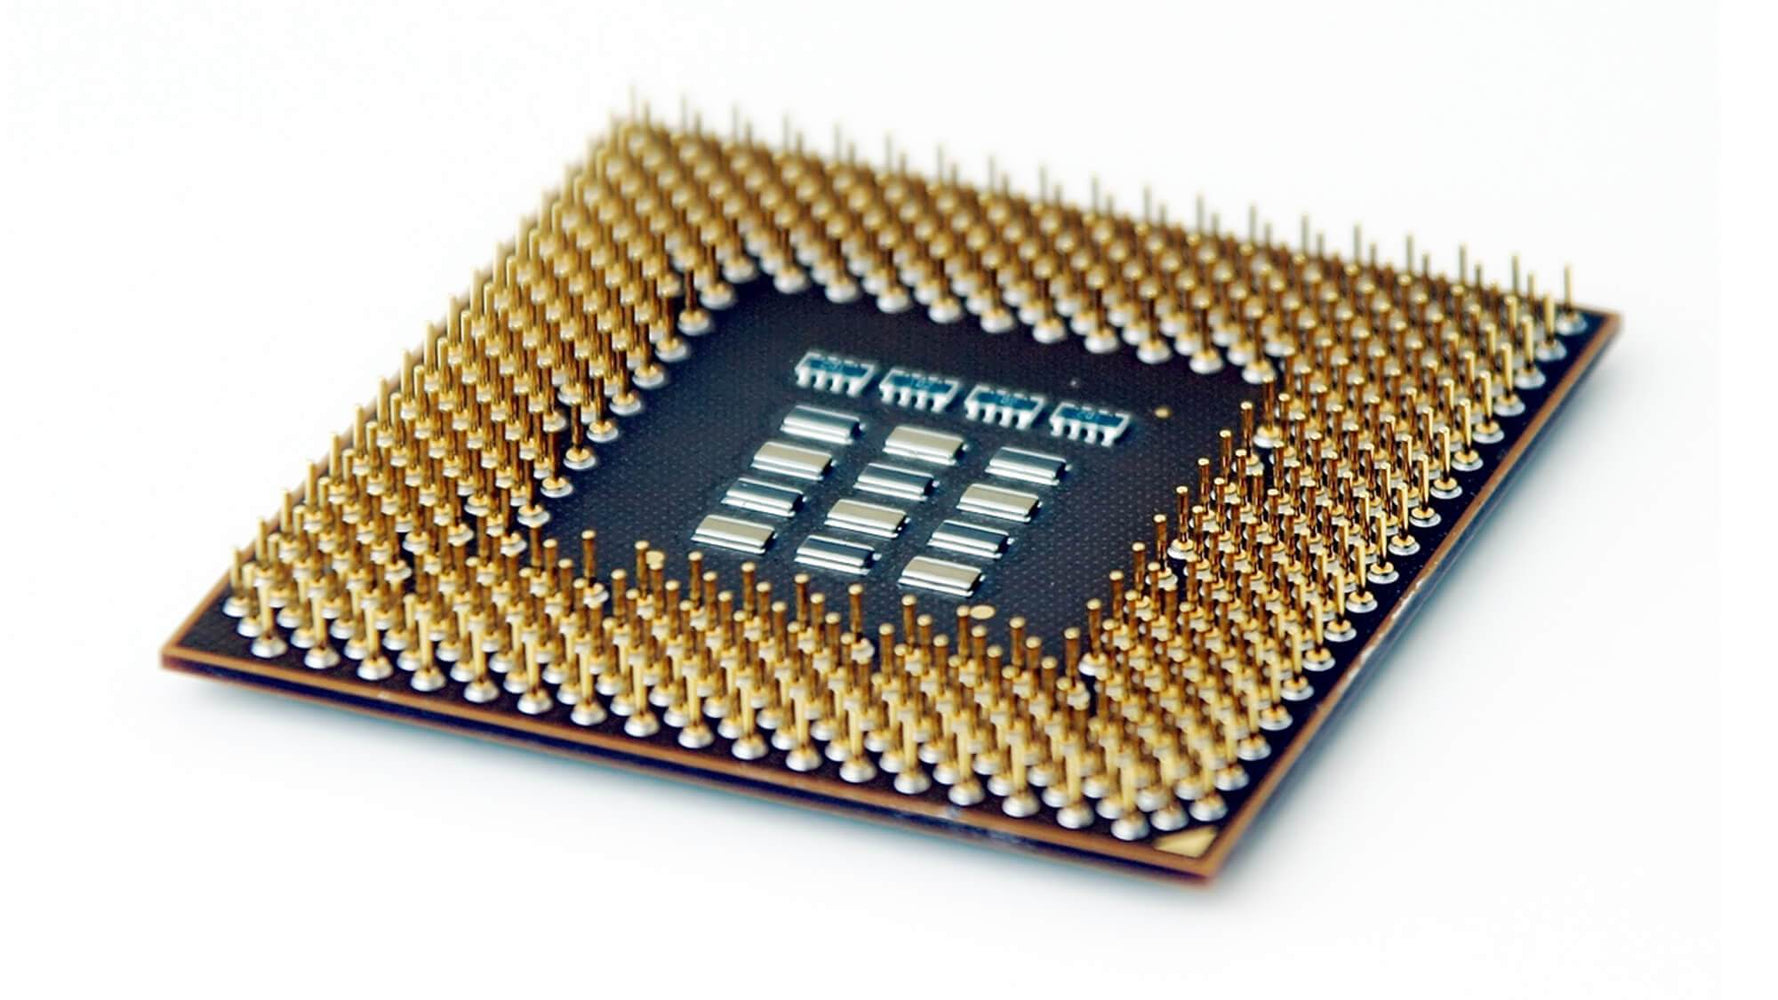 WN651AV - HP 2.30GHz 800MHz FSB 1MB L2 Cache Socket PGA478 Intel Pentium T4500 2-Core Processor